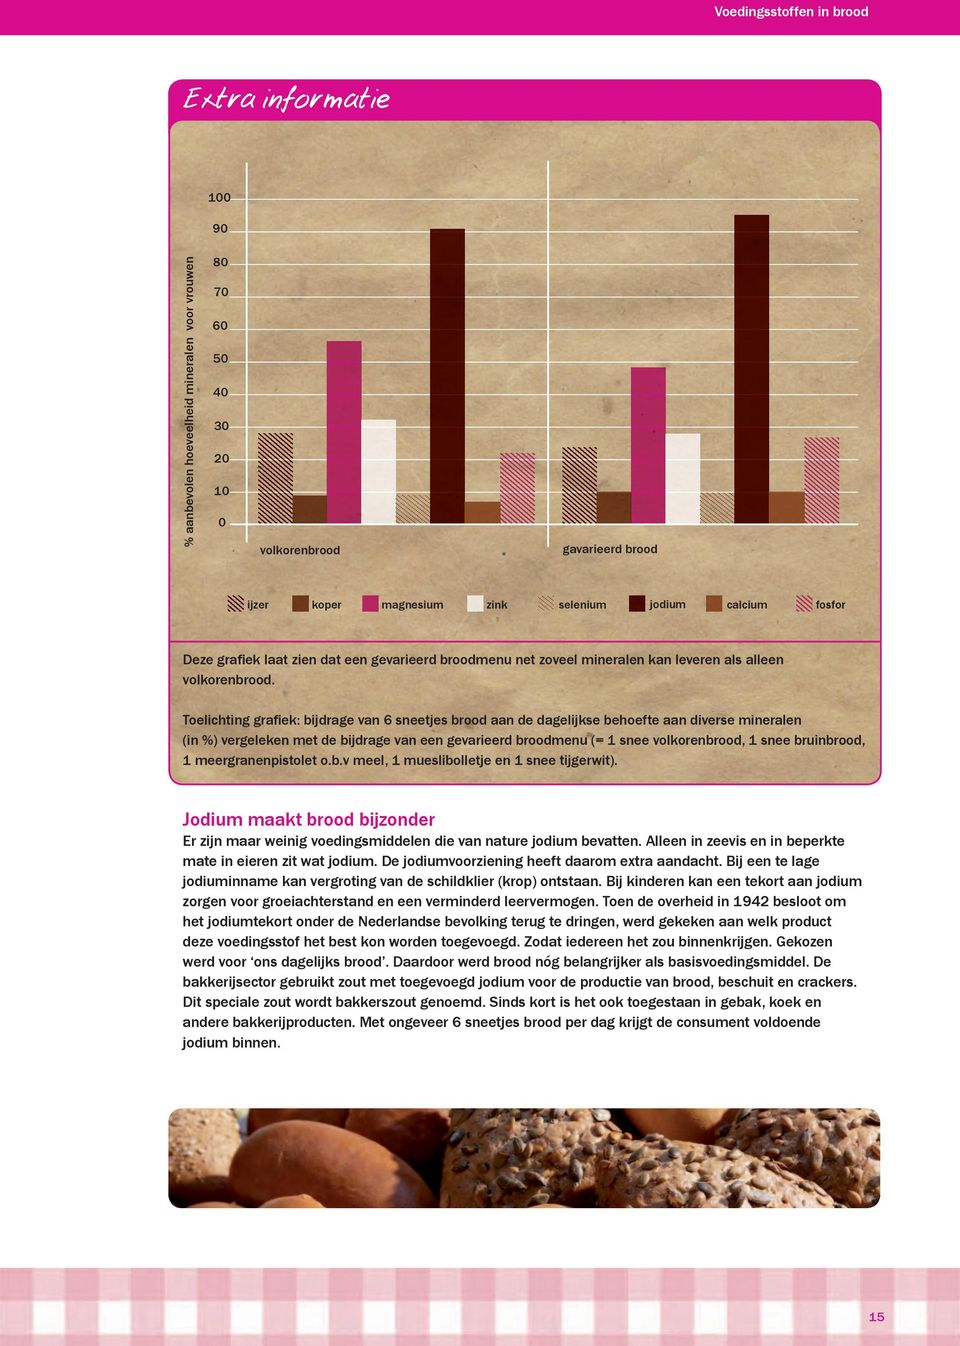 Toelichting grafiek: bijdrage van 6 sneetjes brood aan de dagelijkse behoefte aan diverse mineralen (in %) vergeleken met de bijdrage van een gevarieerd broodmenu (= 1 snee volkorenbrood, 1 snee